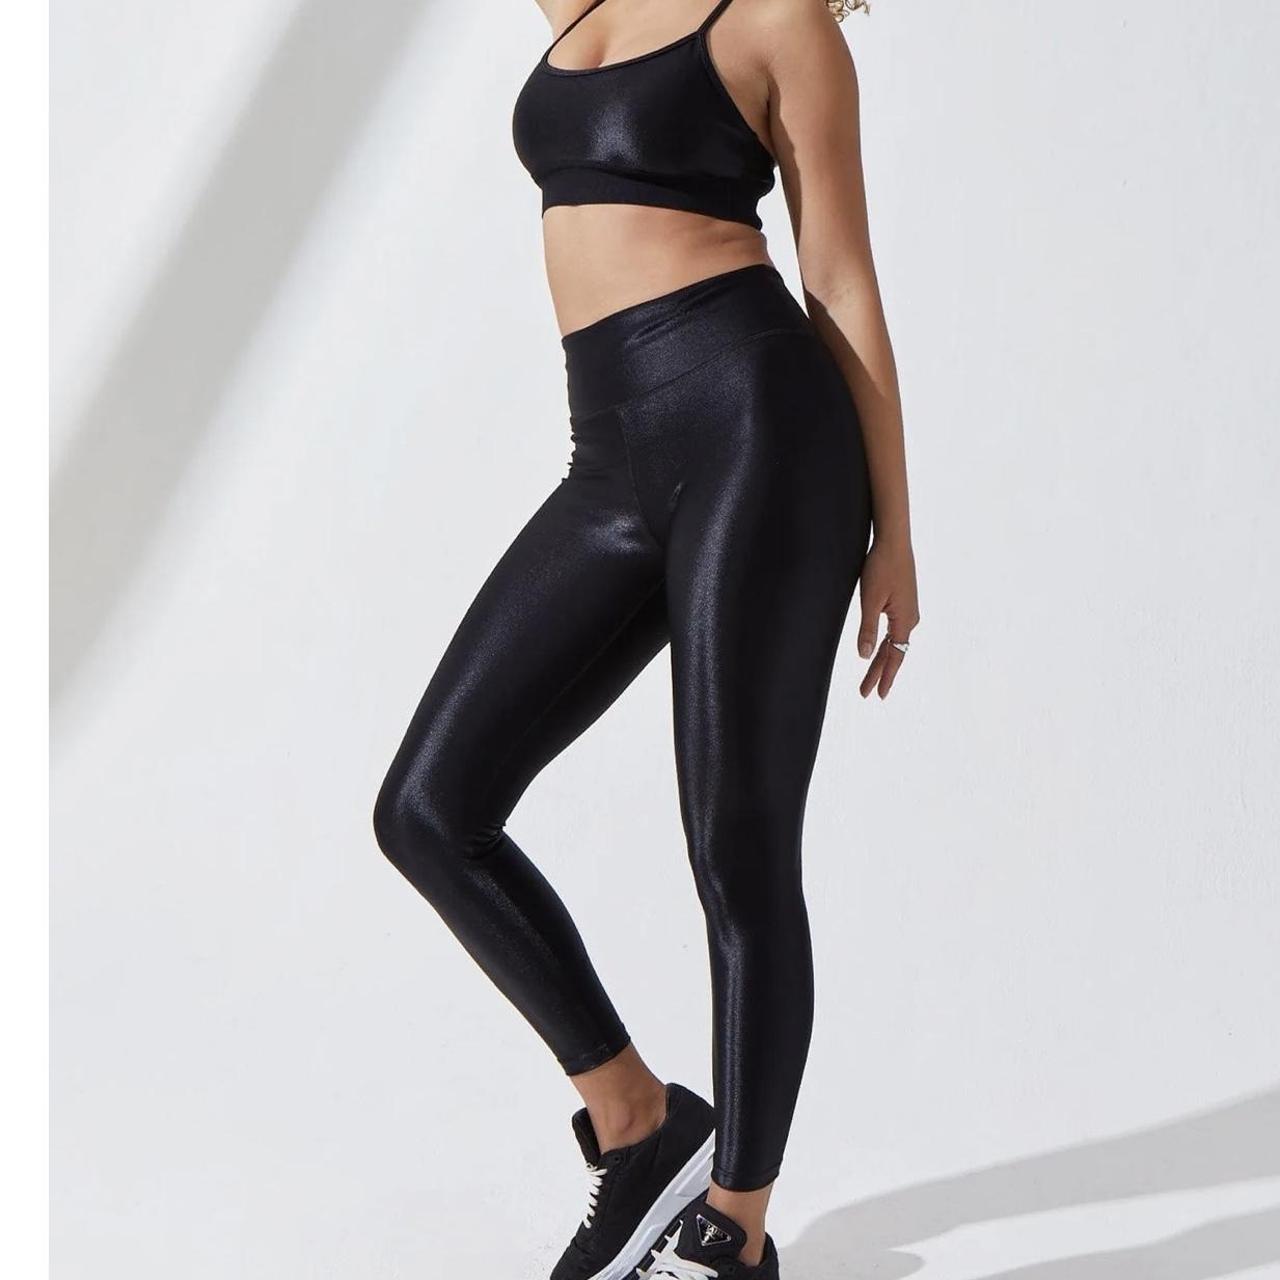 Shiny Nike spandex leggings - Spandexplanet.com